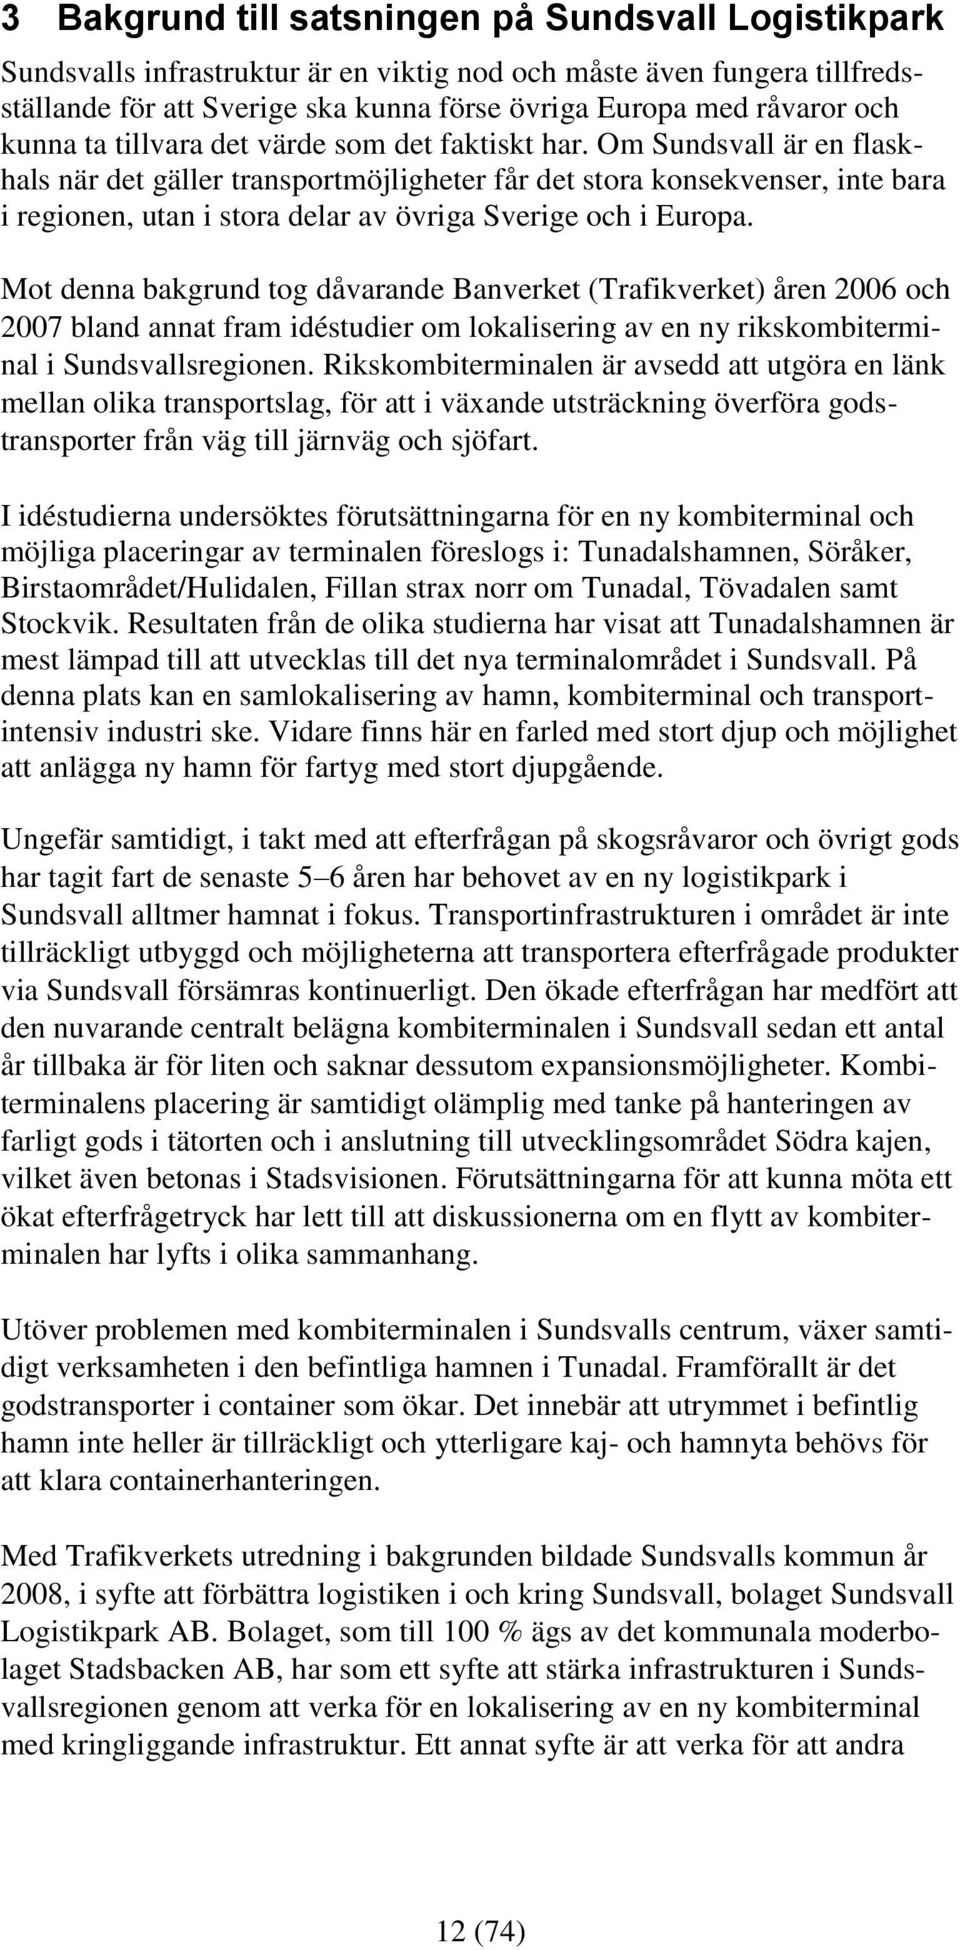 Om Sundsvall är en flaskhals när det gäller transportmöjligheter får det stora konsekvenser, inte bara i regionen, utan i stora delar av övriga Sverige och i Europa.